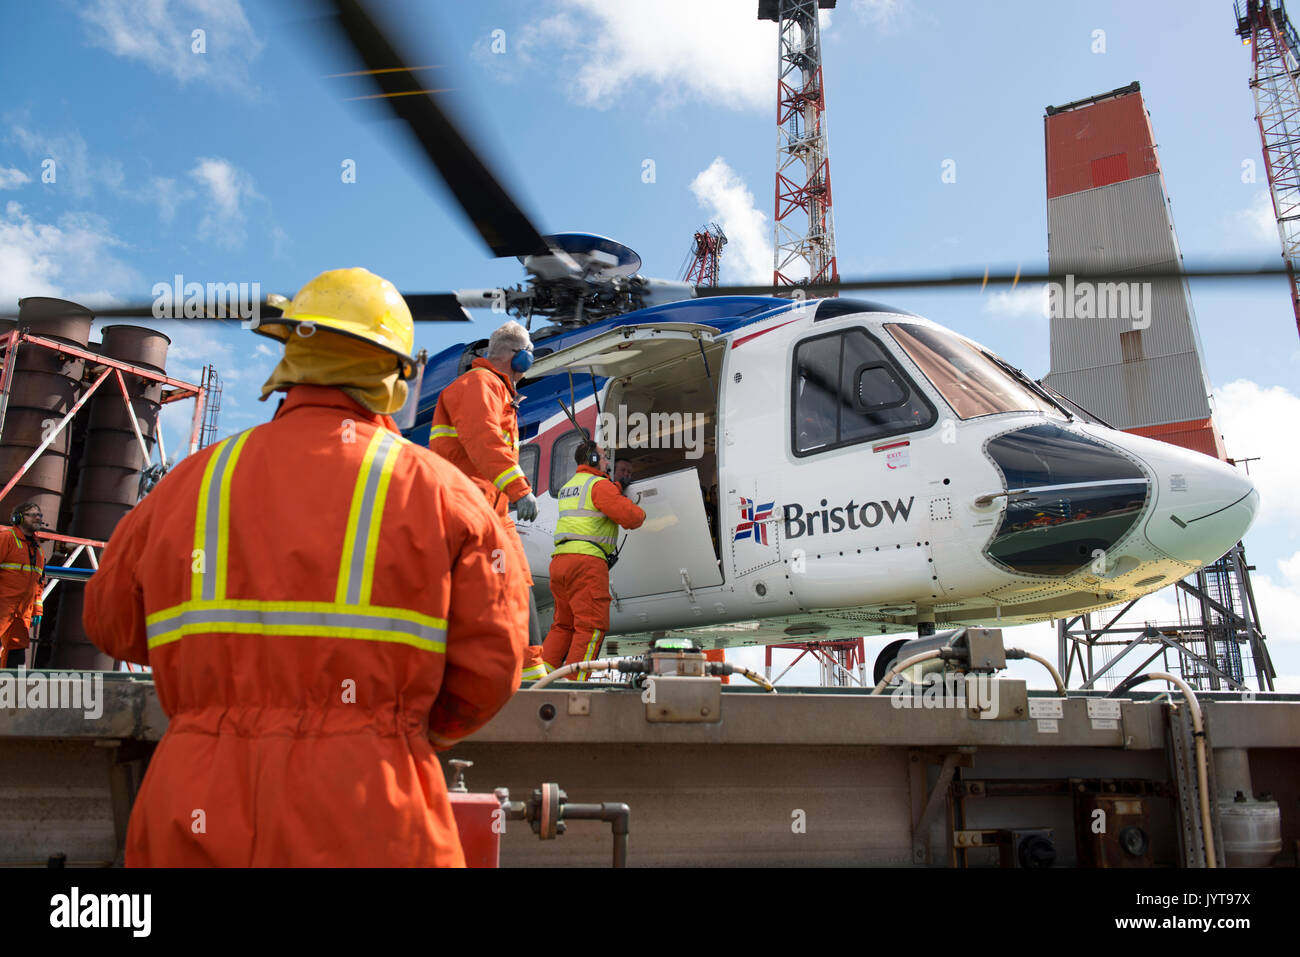 Bristow Hubschrauber, Landung auf einer Nordsee Öl- und Gasplattformen. Helideck Team, Controlling während Passagiere aussteigen. Credit: LEE RAMSDEN/ALAMY Stockfoto